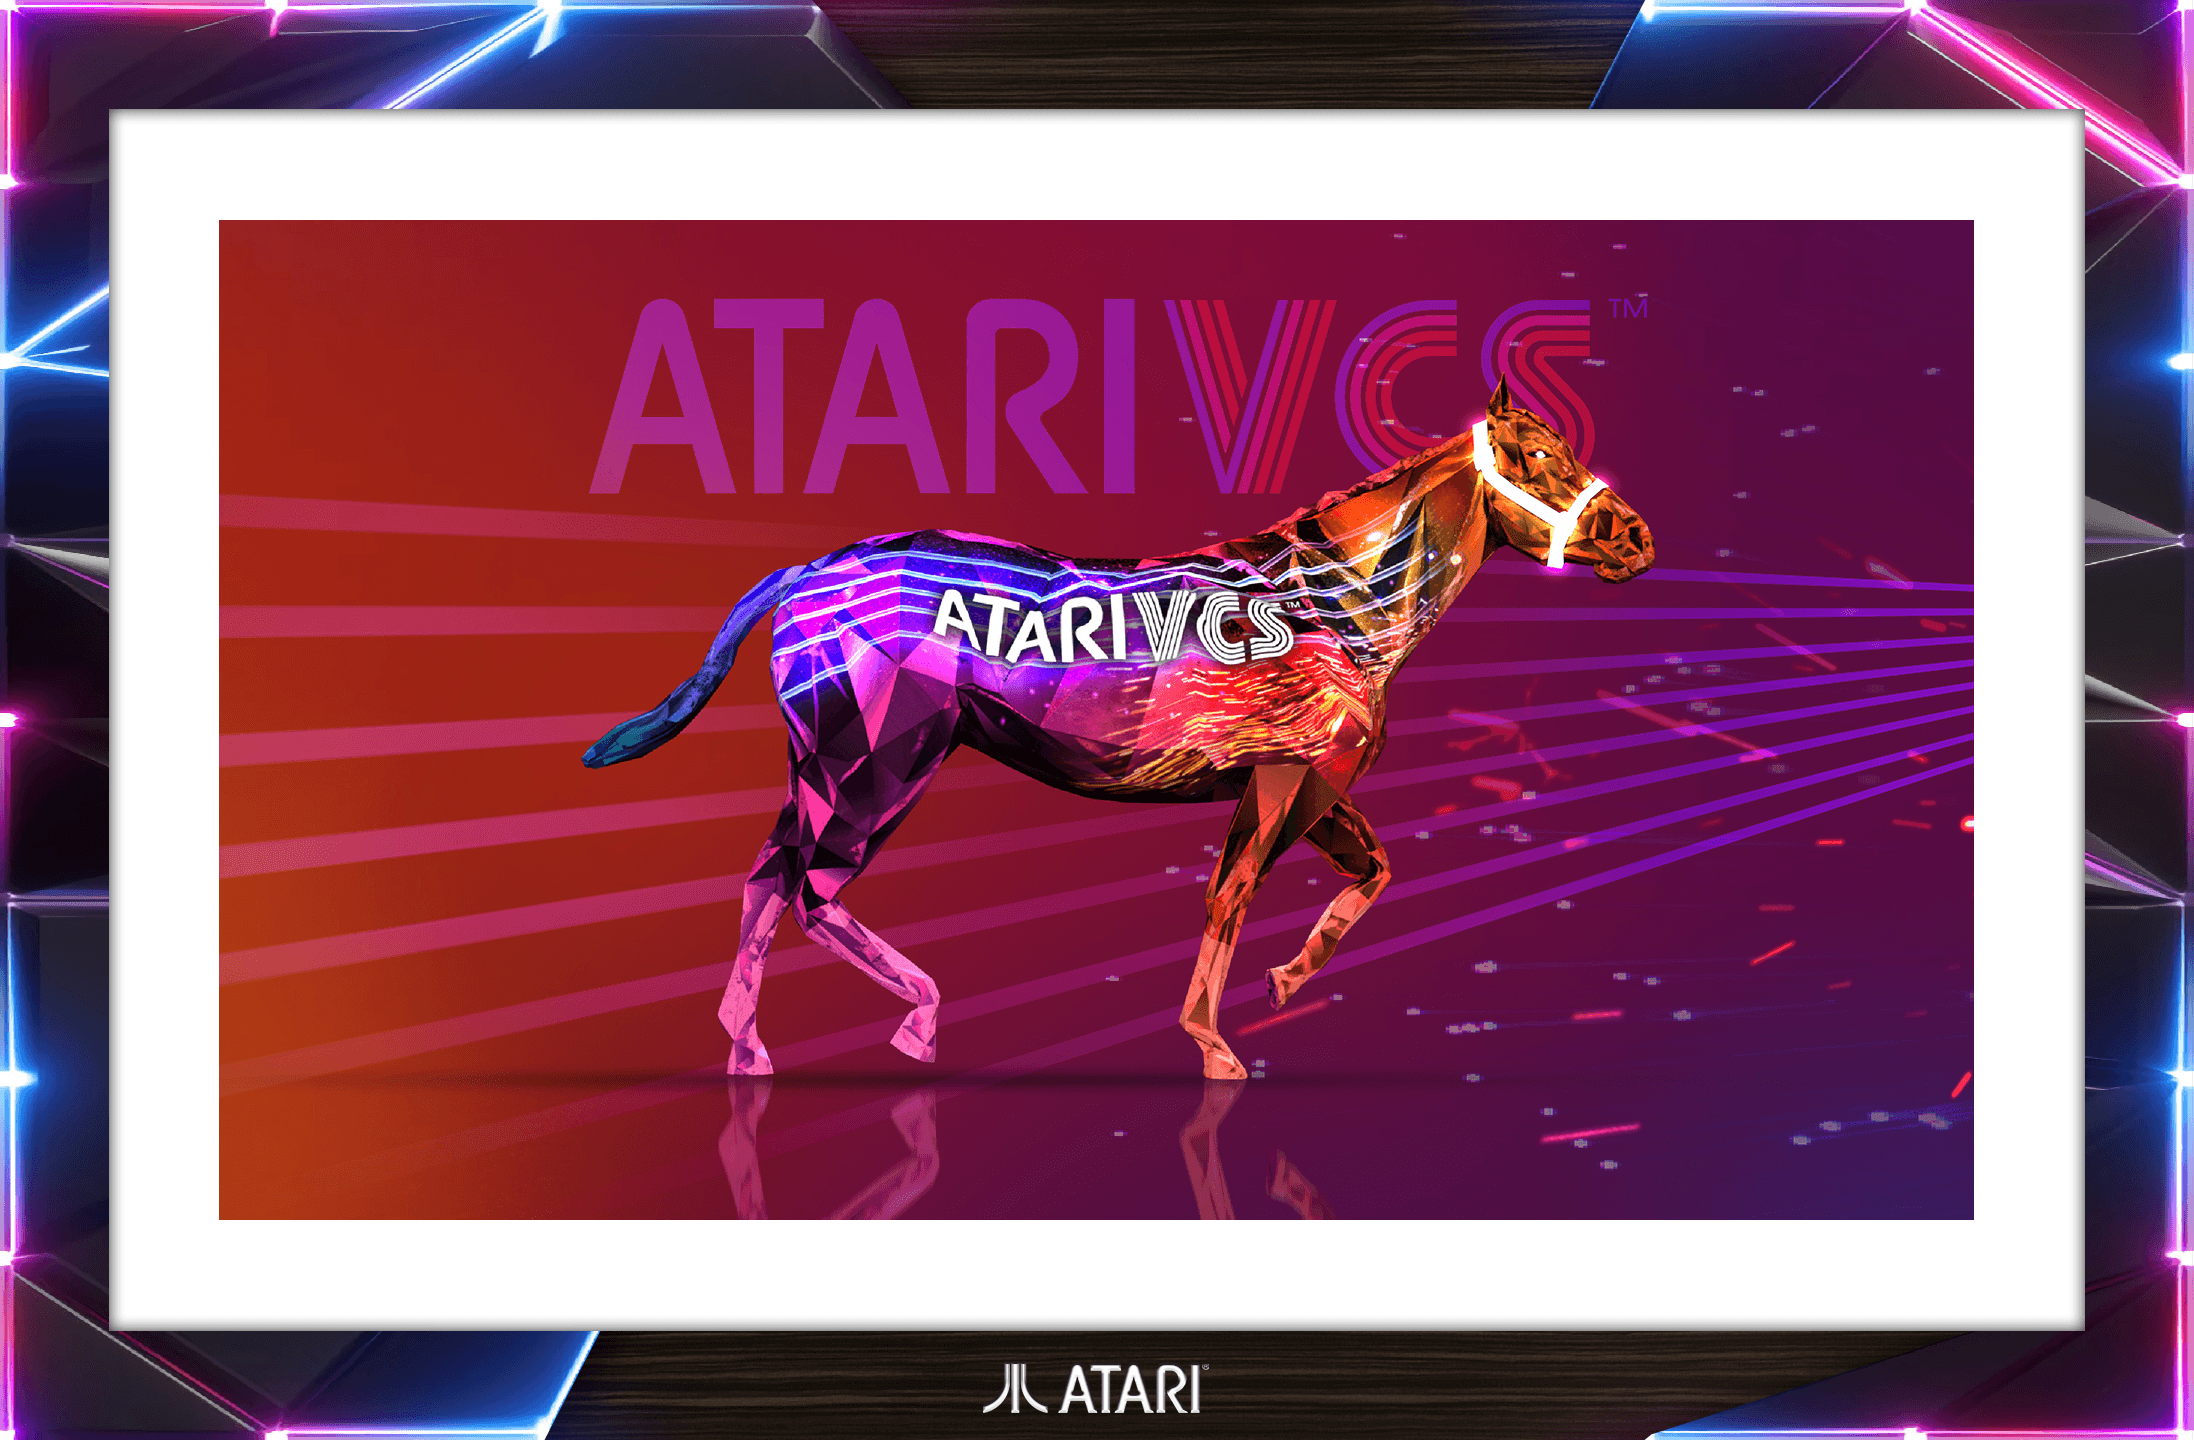 ATARI - Art + Atari VCS Skin + Colt Z4, Fuzzy Wuzzy + Name: Atari VCS